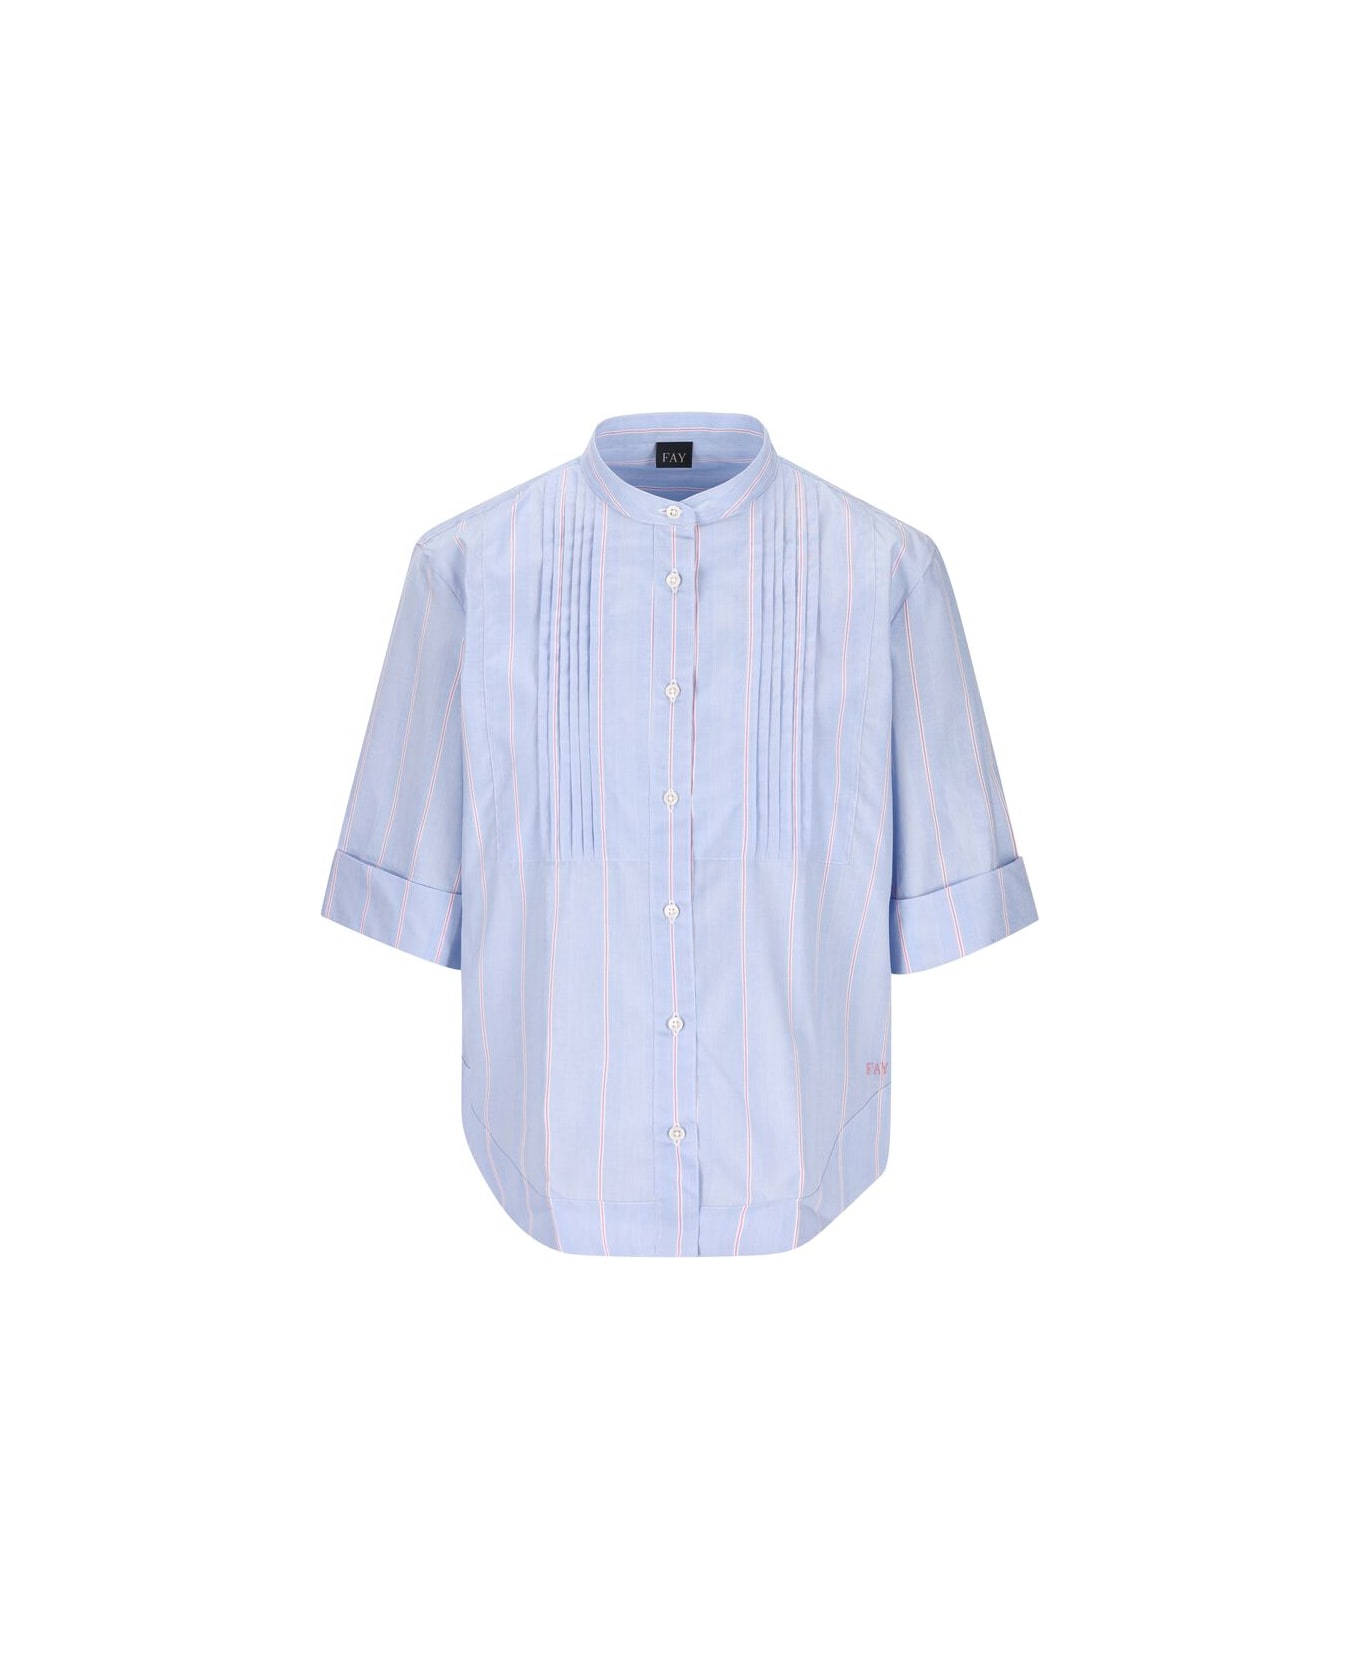 Fay Poepelin Shirt With Mandarin Collar - Azzurro/rosa